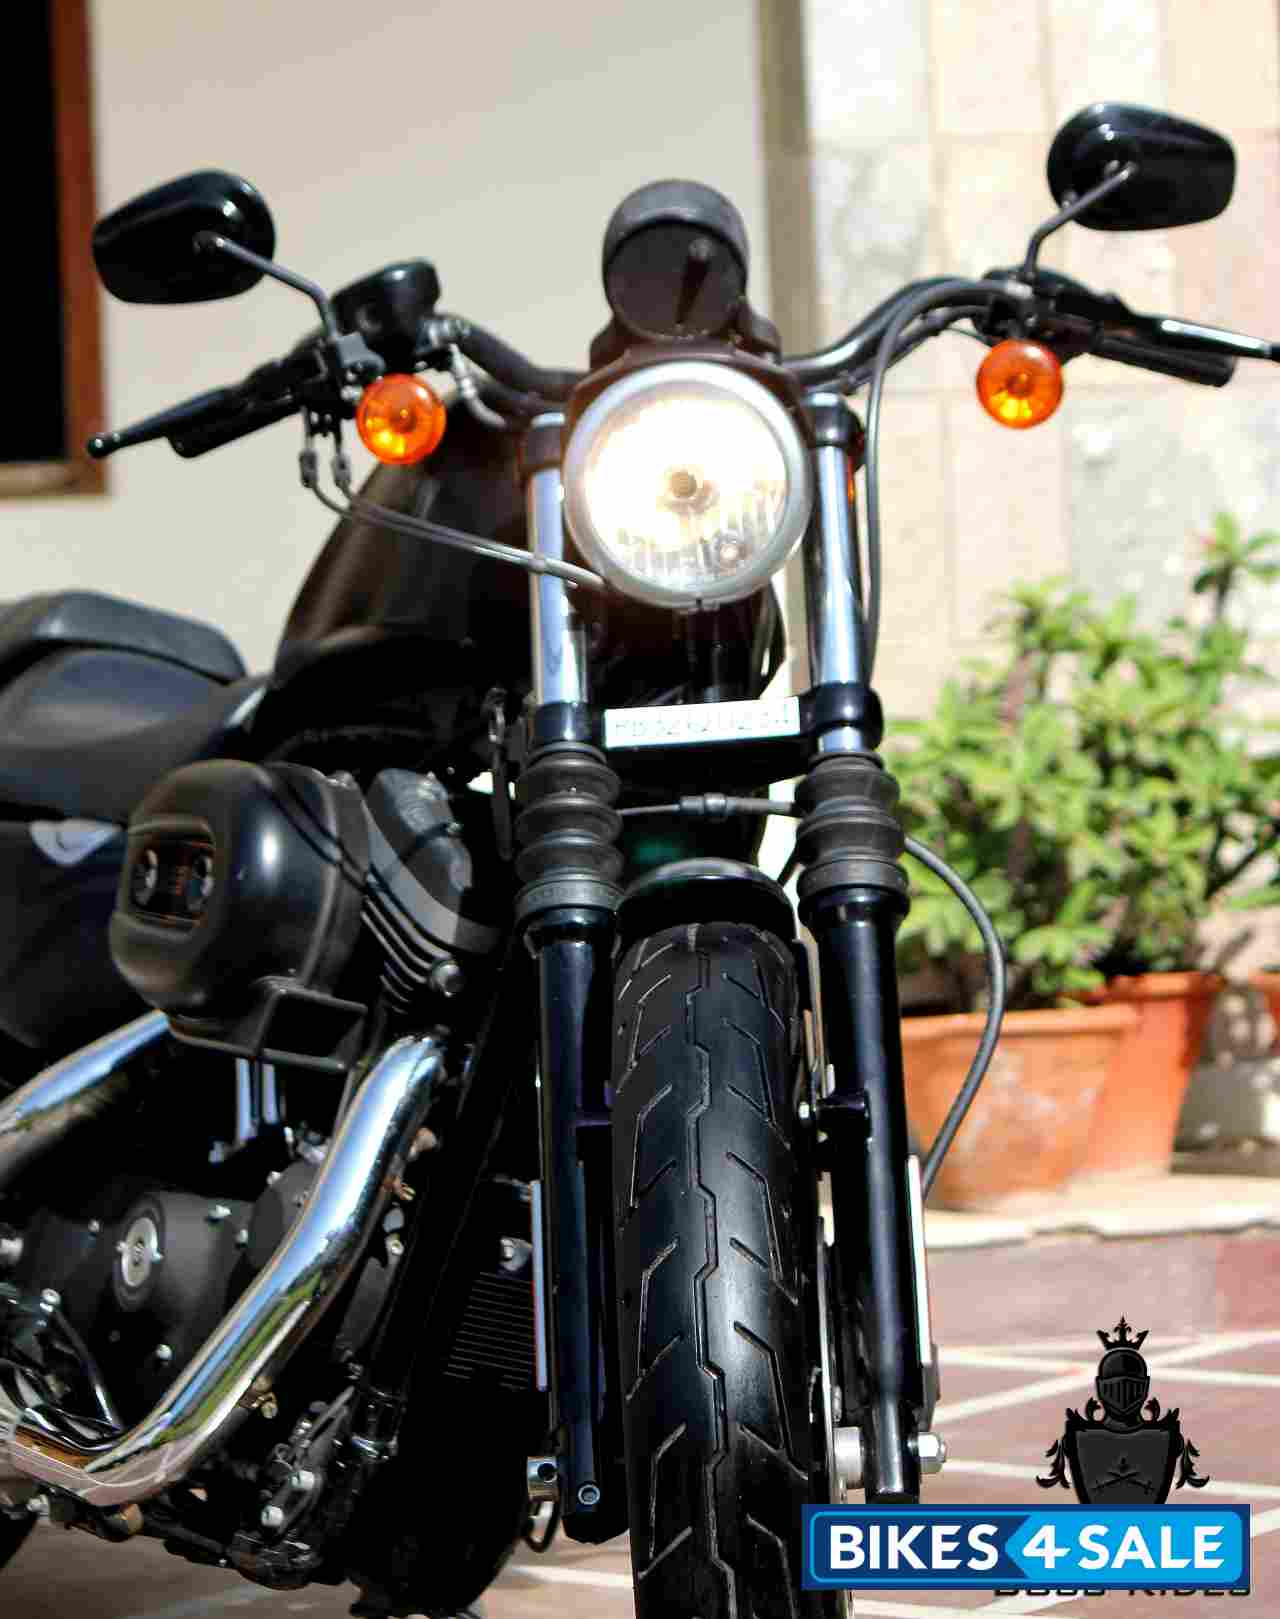 Matte Black Harley Davidson Iron 883